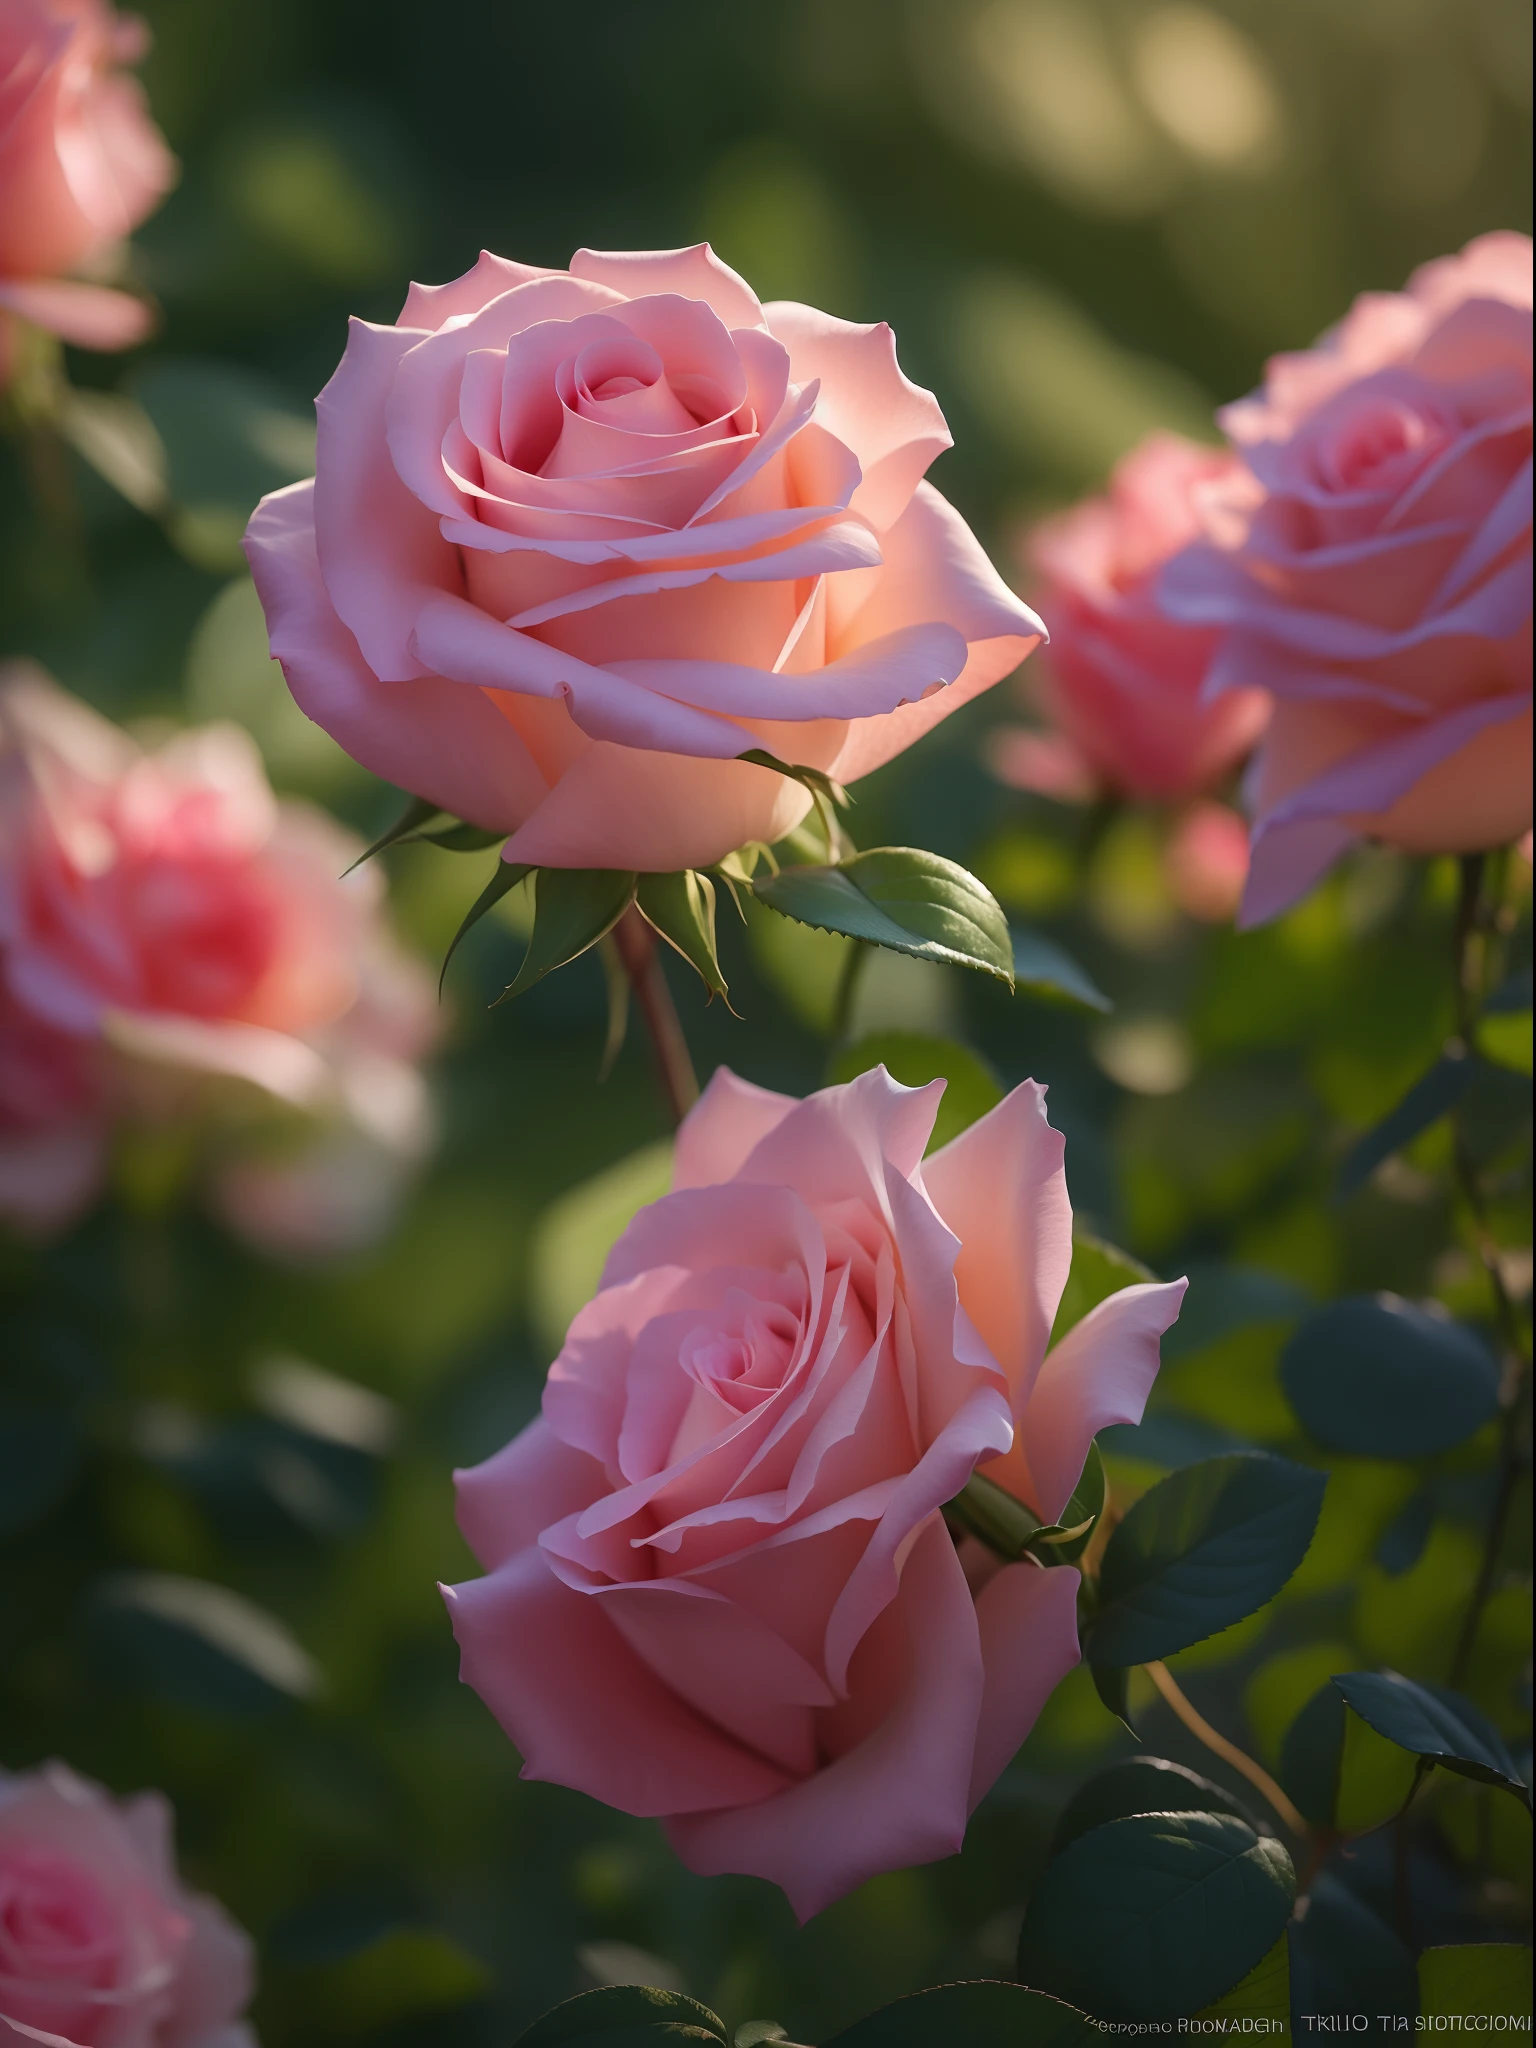 粉紅玫瑰生長在花園的灌木叢中, 粉紅玫瑰, 電影燈光下的玫瑰, 粉紅玫瑰, 玫瑰唐寧斯, 一朵玫瑰的照片, 安娜·尼科诺娃, 柔和的粉紅色, 用佳能5d拍攝的照片, 粉紅色柔光 4K, 使用賓得k1000拍攝, 令人難以置信的美麗, 憂鬱玫瑰色柔光